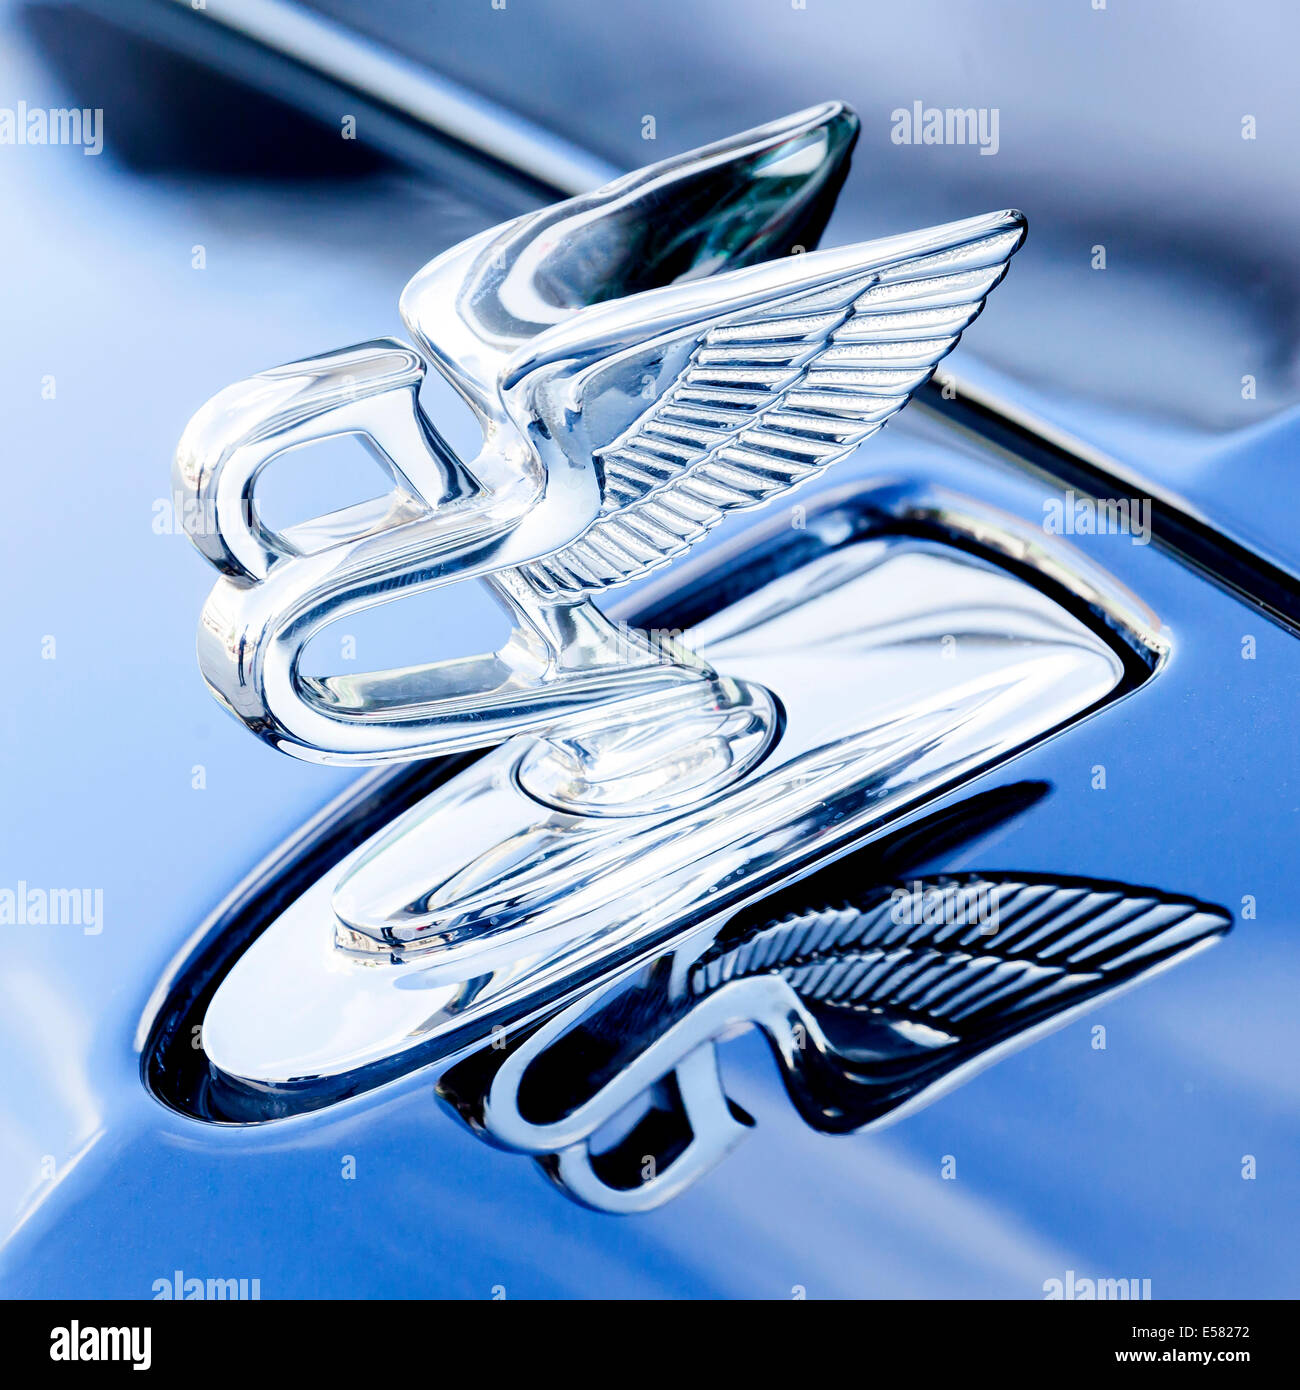 Ornamento del cofano Flying B su un veicolo di lusso della casa costruttrice inglese Bentley, 65th International Motor Show IAA 2013 Foto Stock